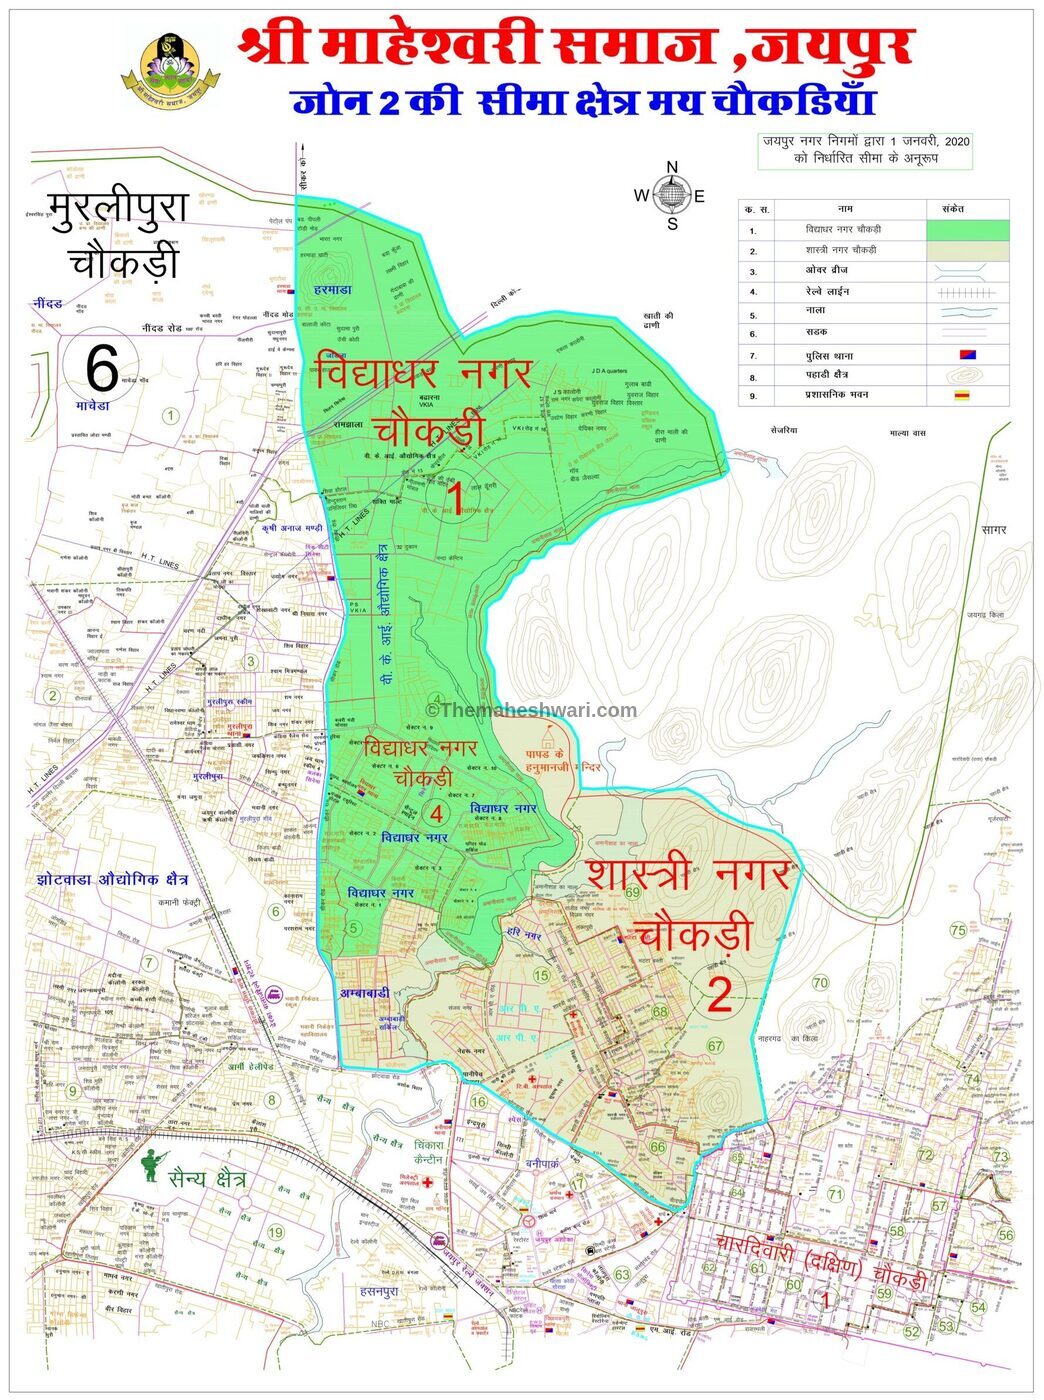 Maheshwari samaj Jaipur, Zone 2